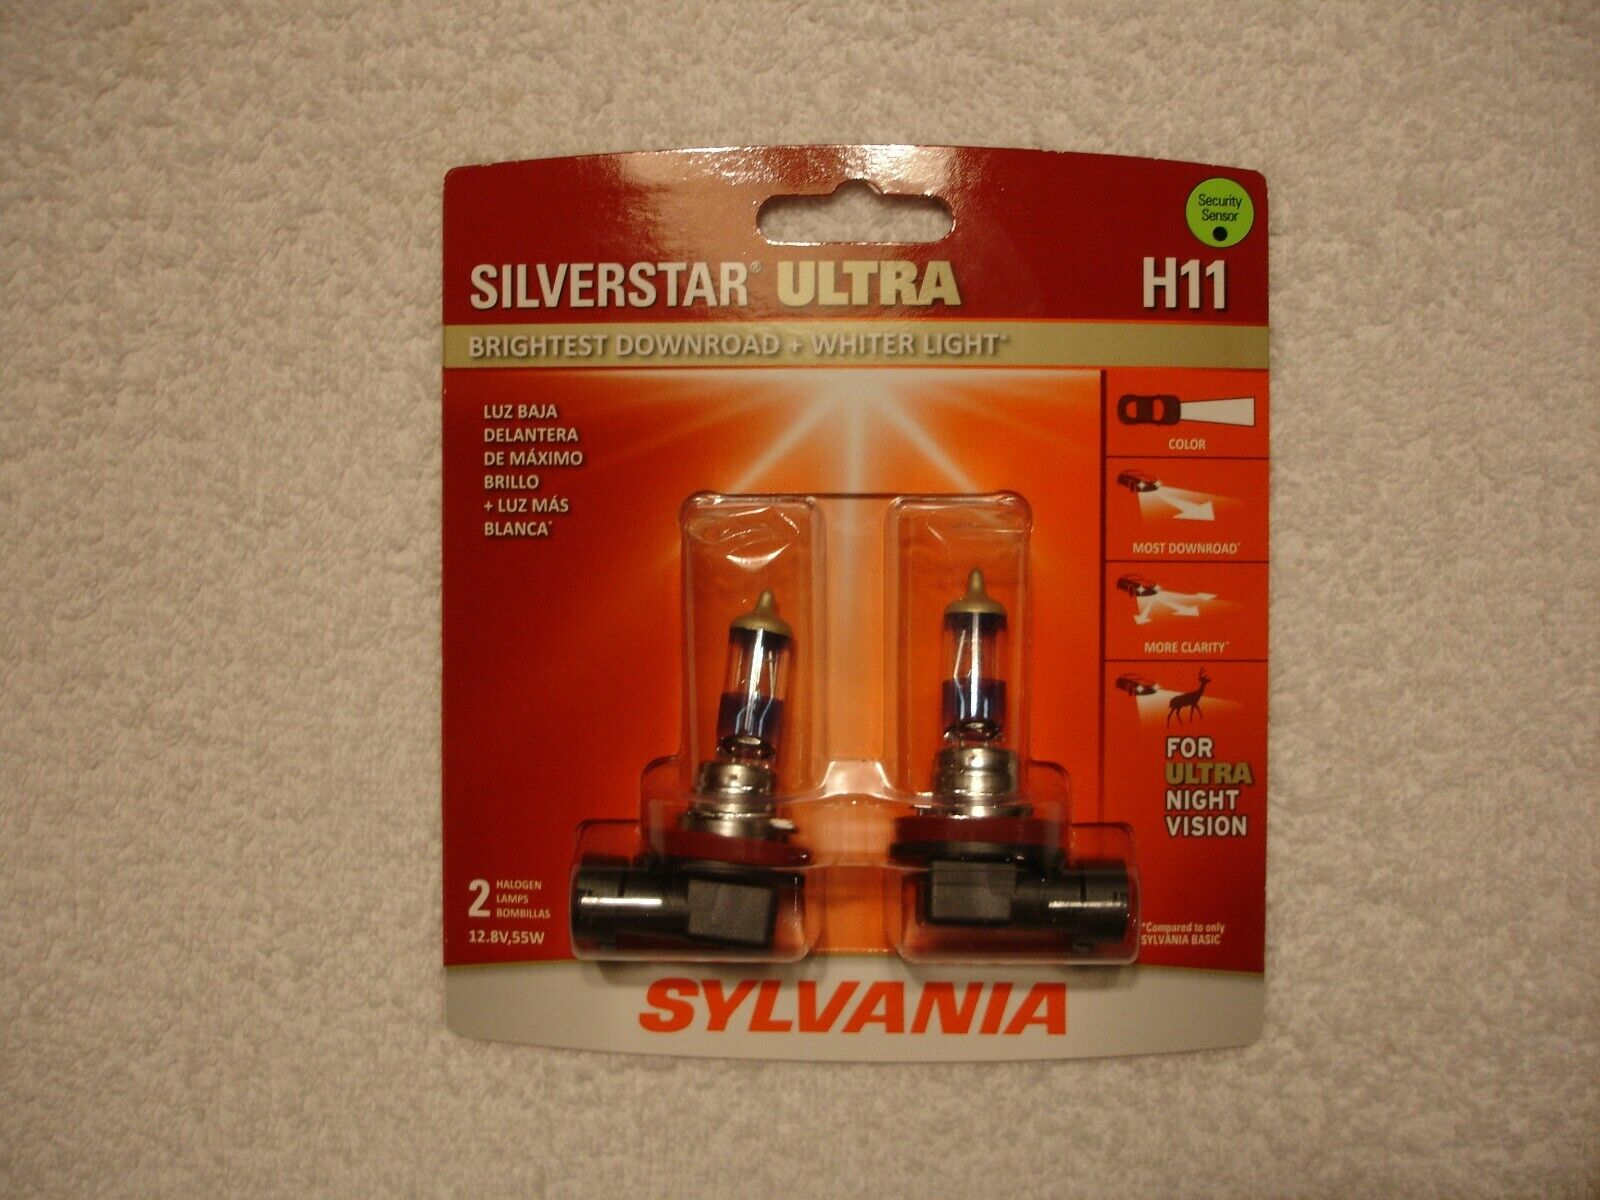 SYLVANIA Silverstar H11 ULTRA NIGHT VISION Halogen Headlight Bulbs Pack of 2 